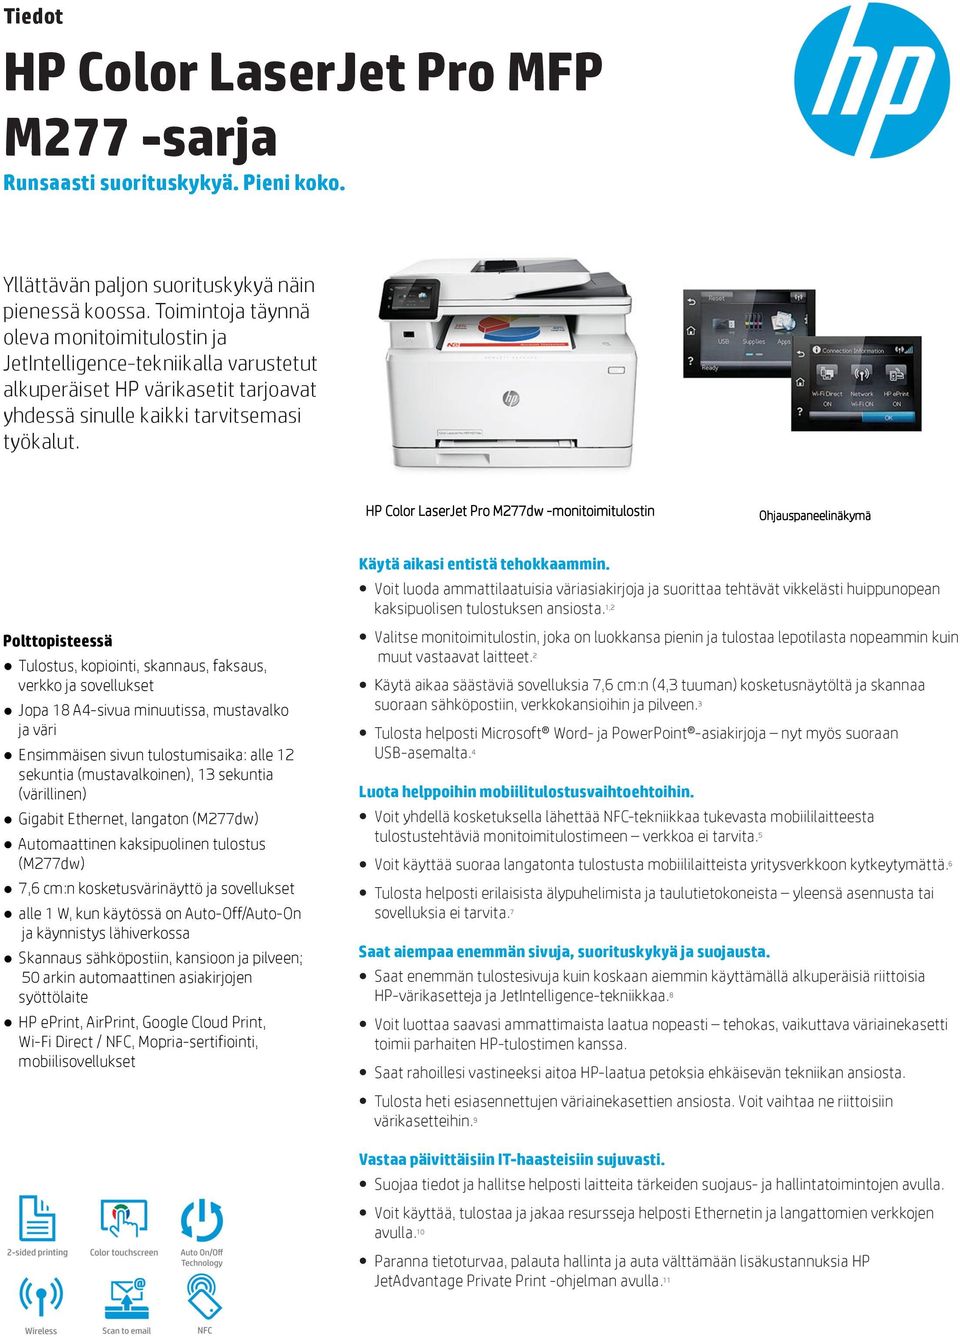 HP Color LaserJet Pro M277dw -monitoimitulostin Ohjauspaneelinäkymä Polttopisteessä Tulostus, kopiointi, skannaus, faksaus, verkko ja sovellukset Jopa 18 A4-sivua minuutissa, mustavalko ja väri